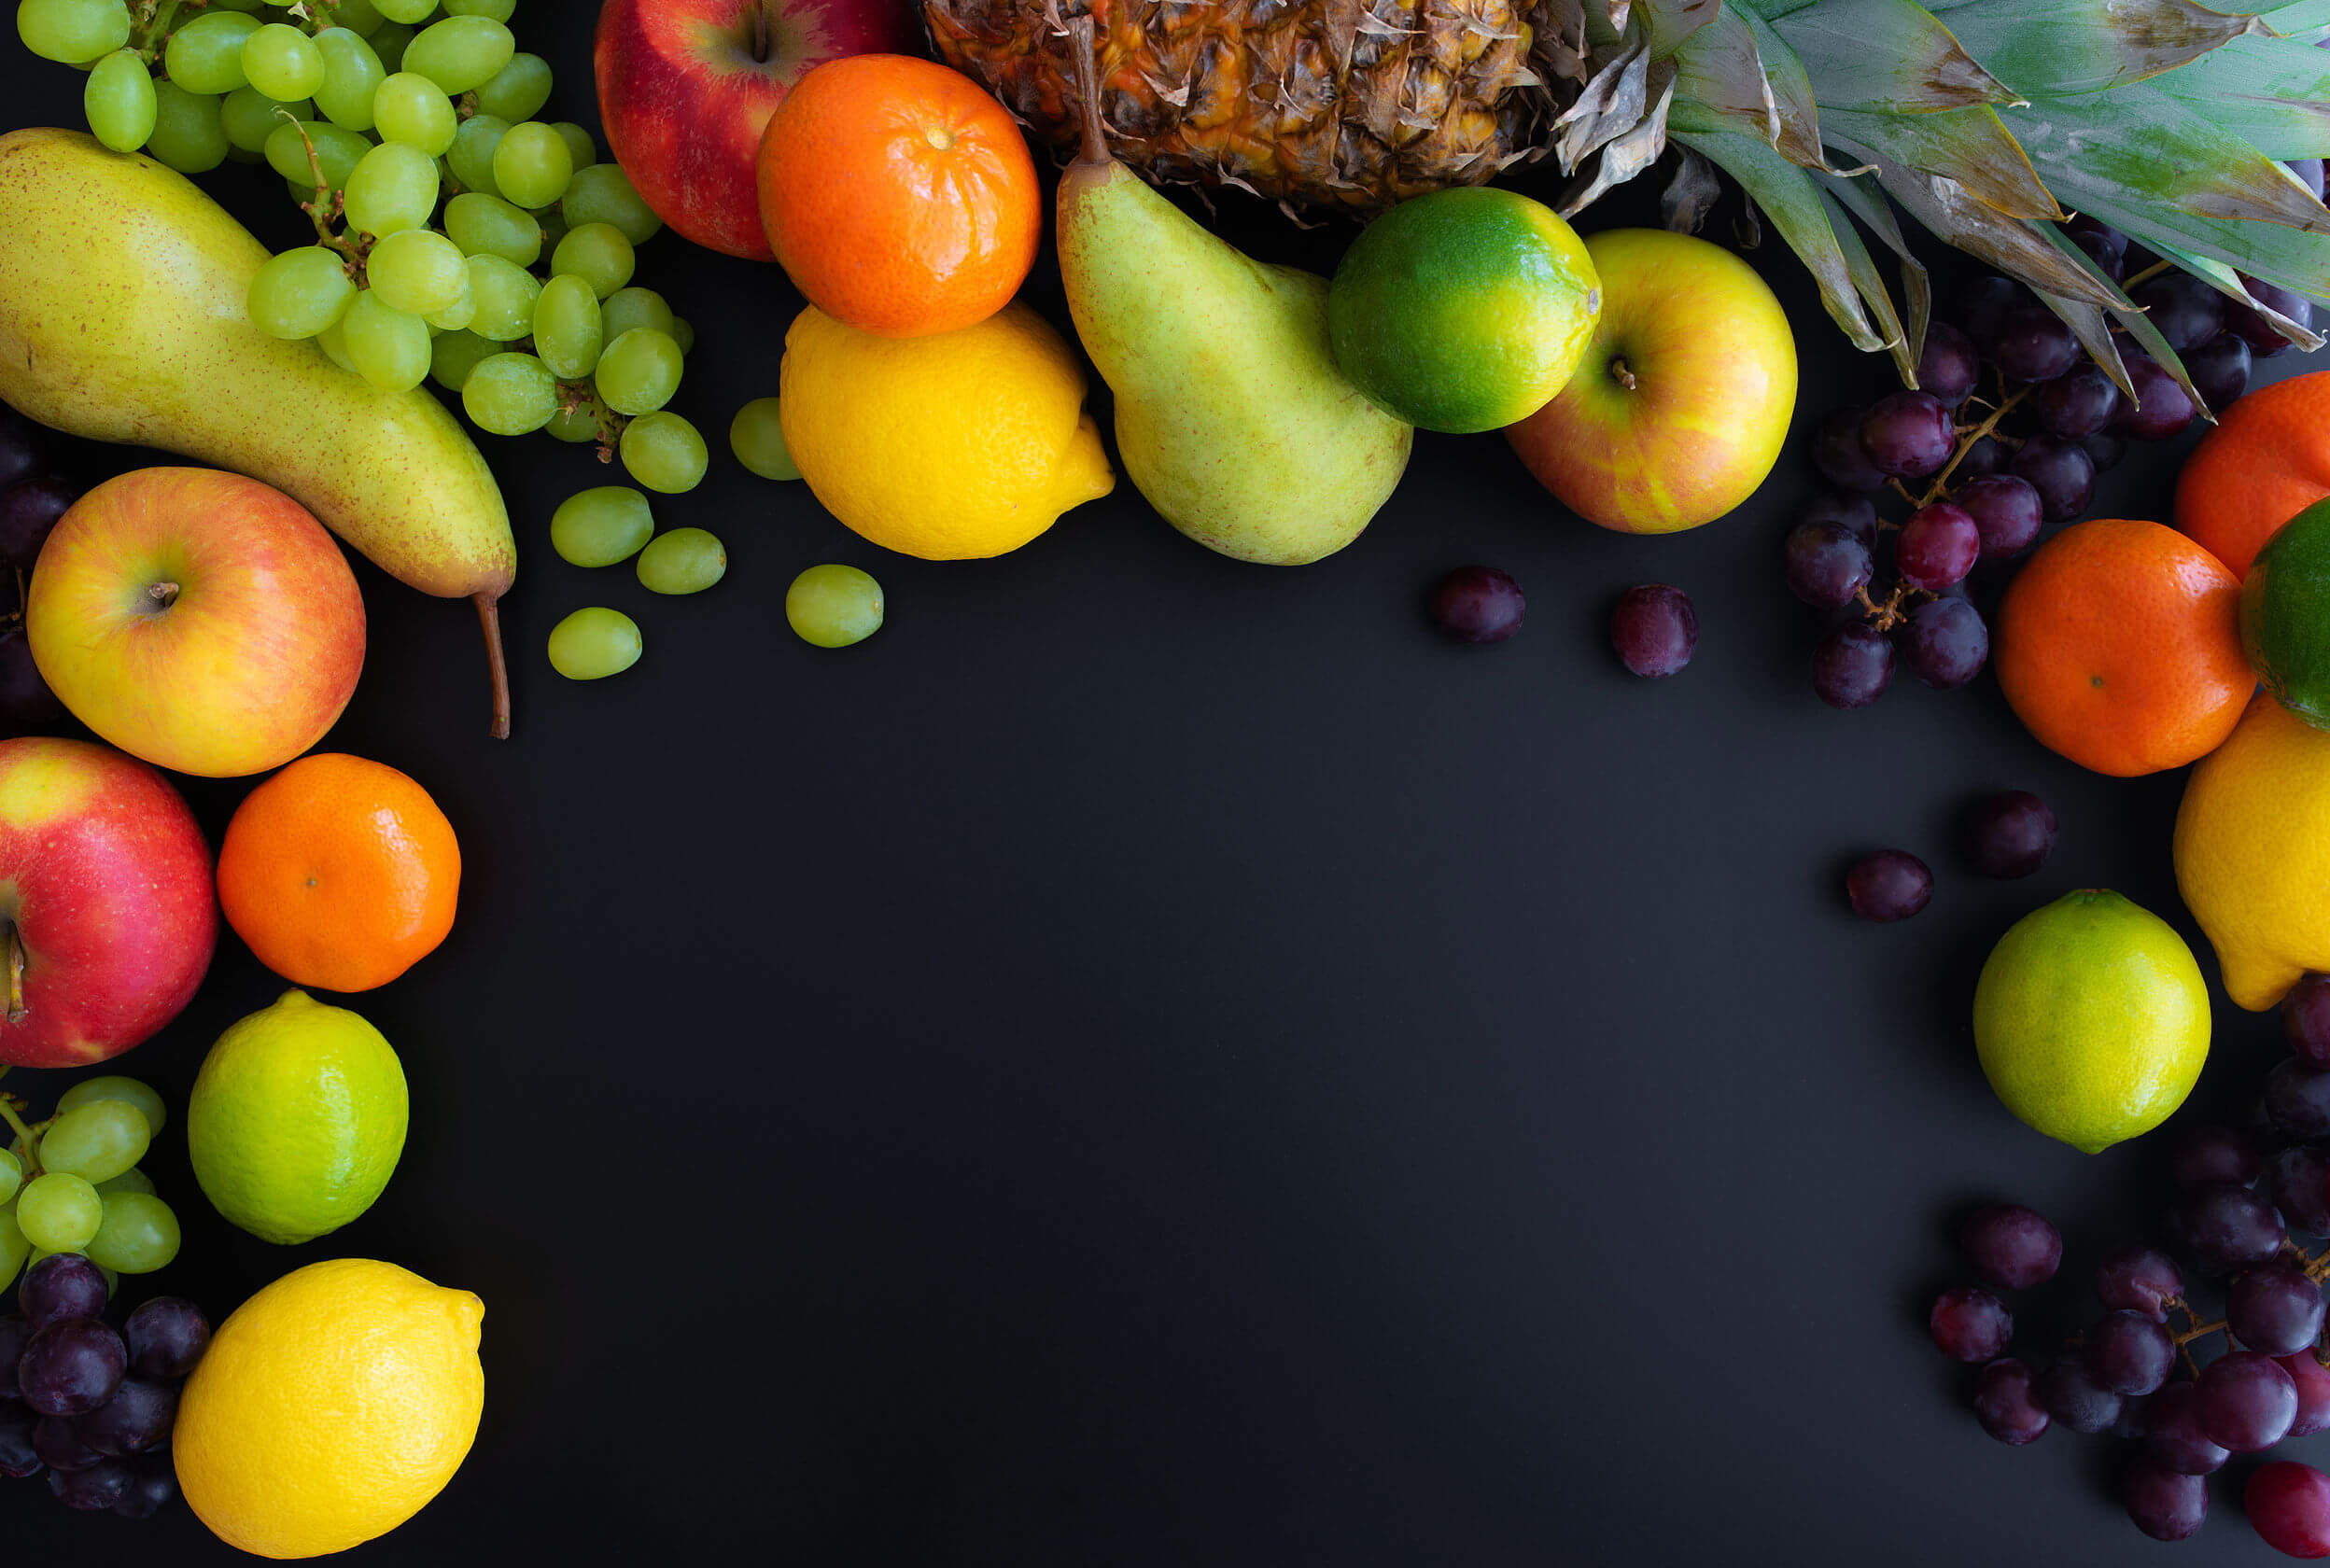 Les fruits peuvent faire partie d'une alimentation équilibrée.